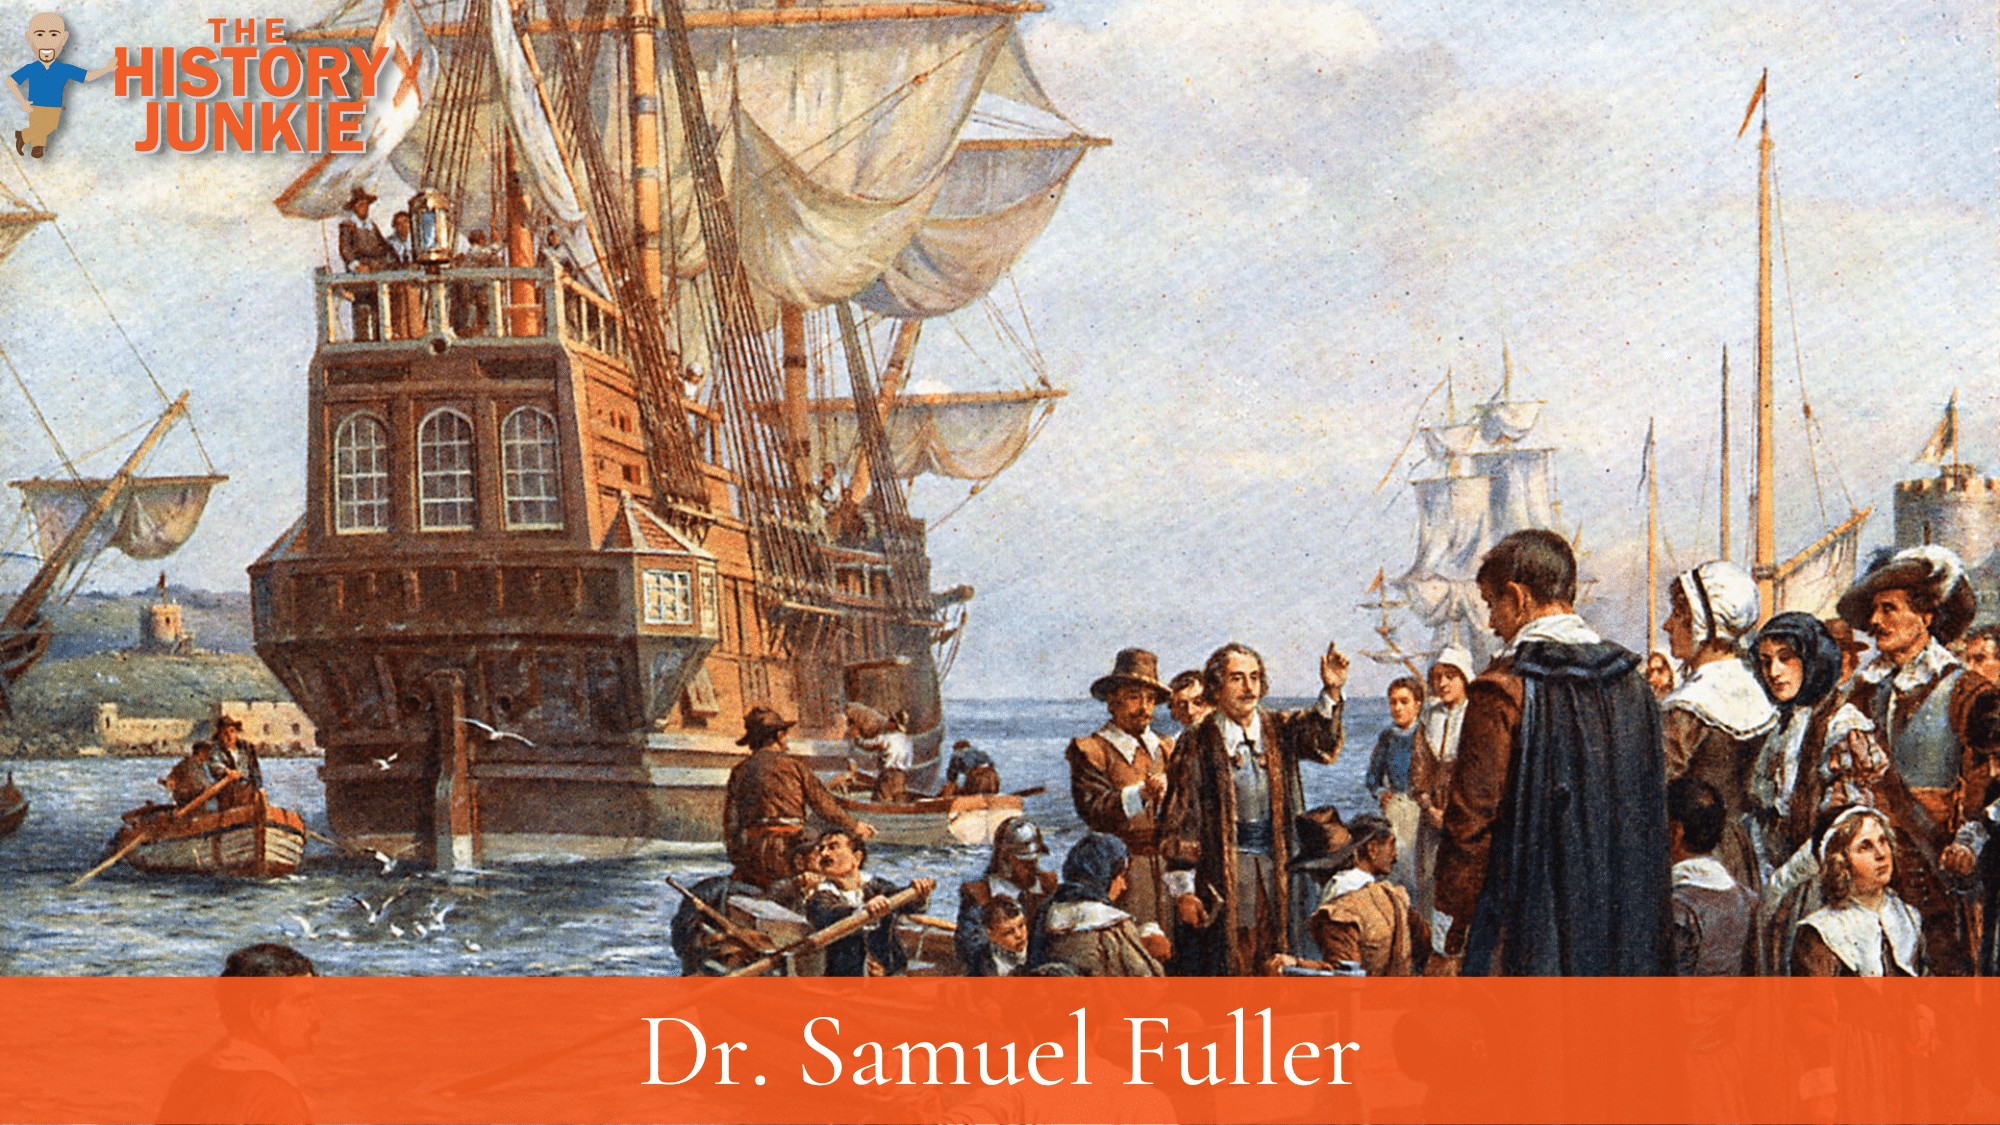 Dr. Samuel Fuller